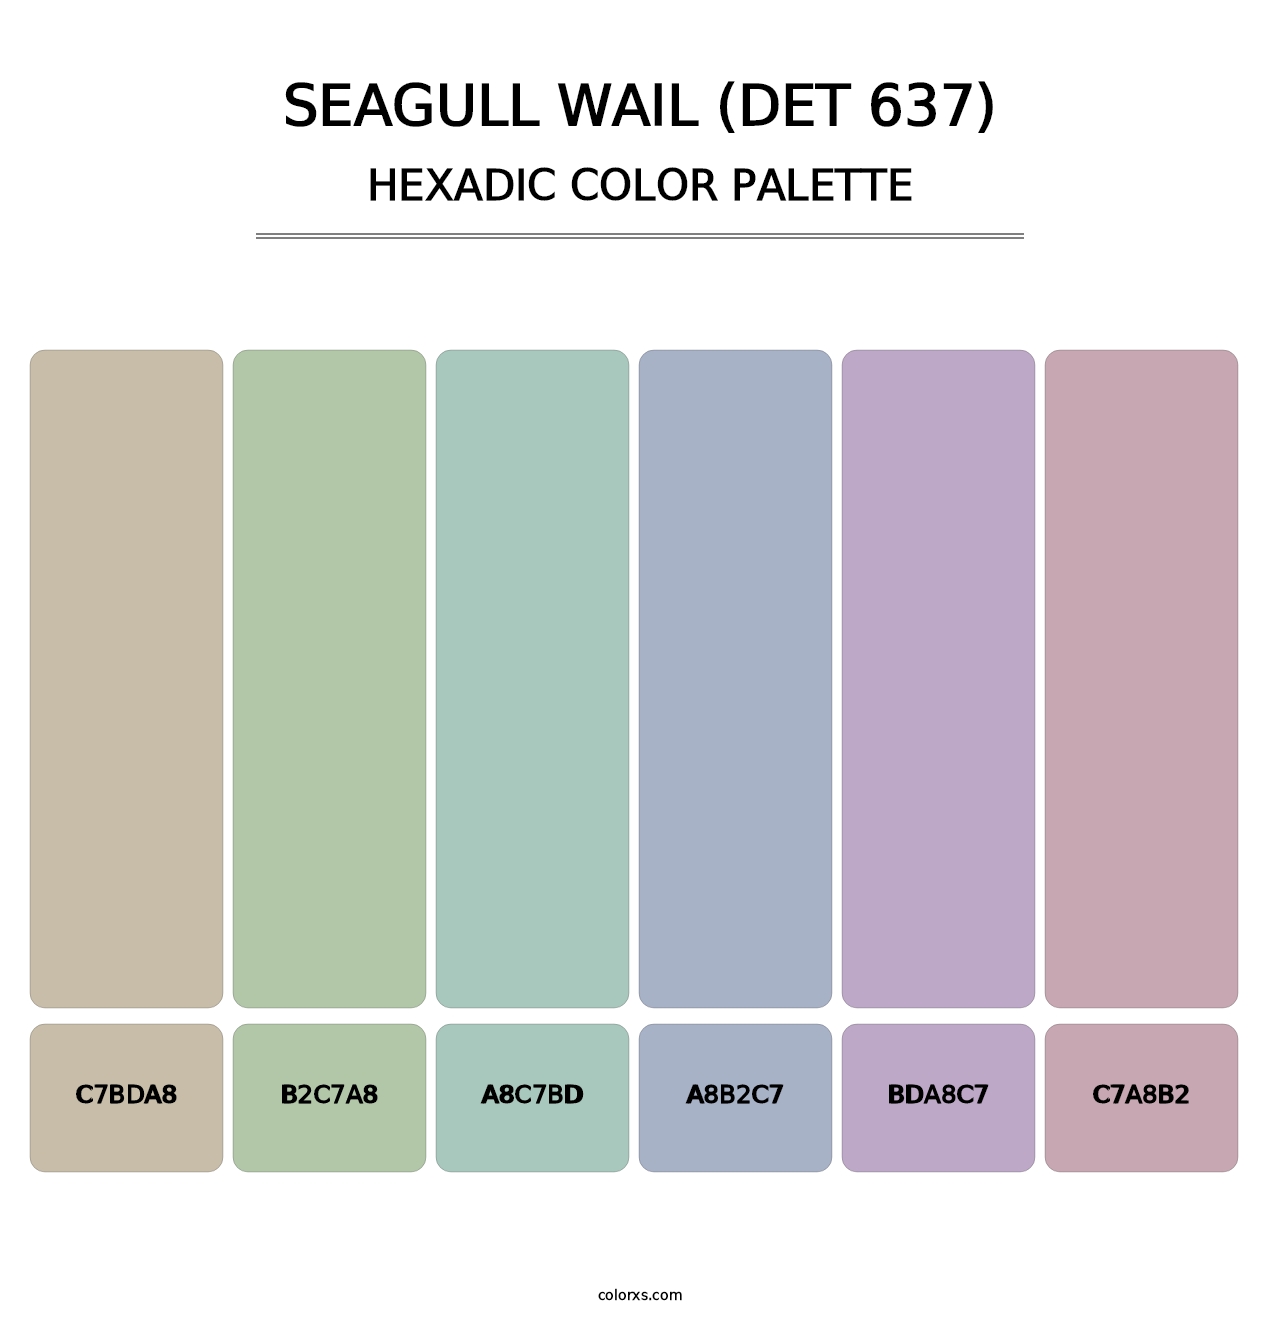 Seagull Wail (DET 637) - Hexadic Color Palette